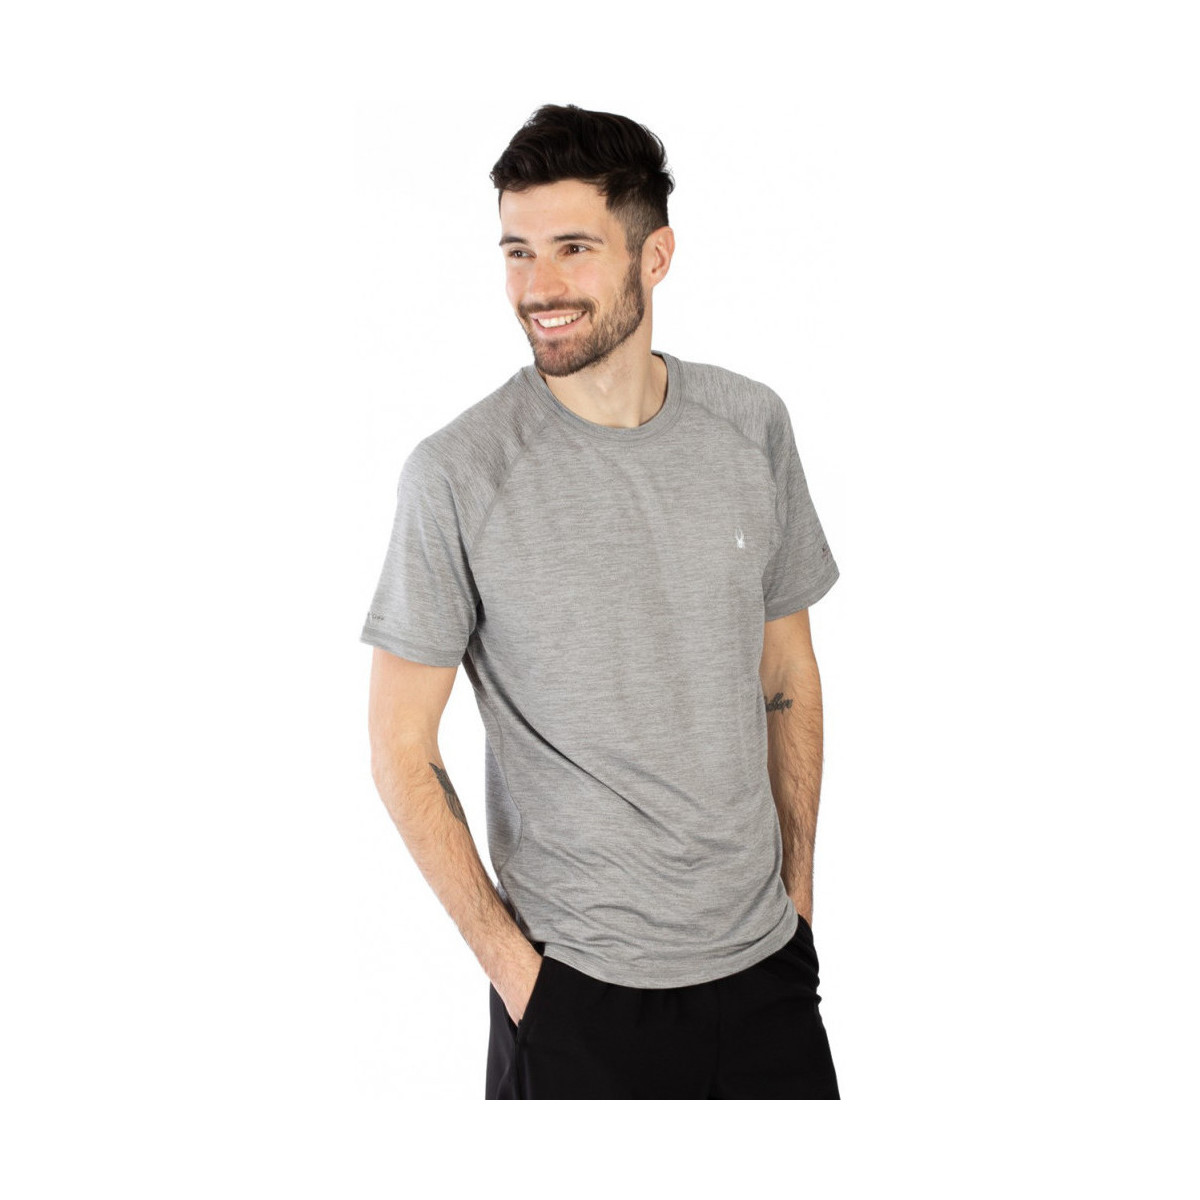 Vêtements Homme T-shirts manches courtes Spyder T-shirt de sport - Quick Dry Gris